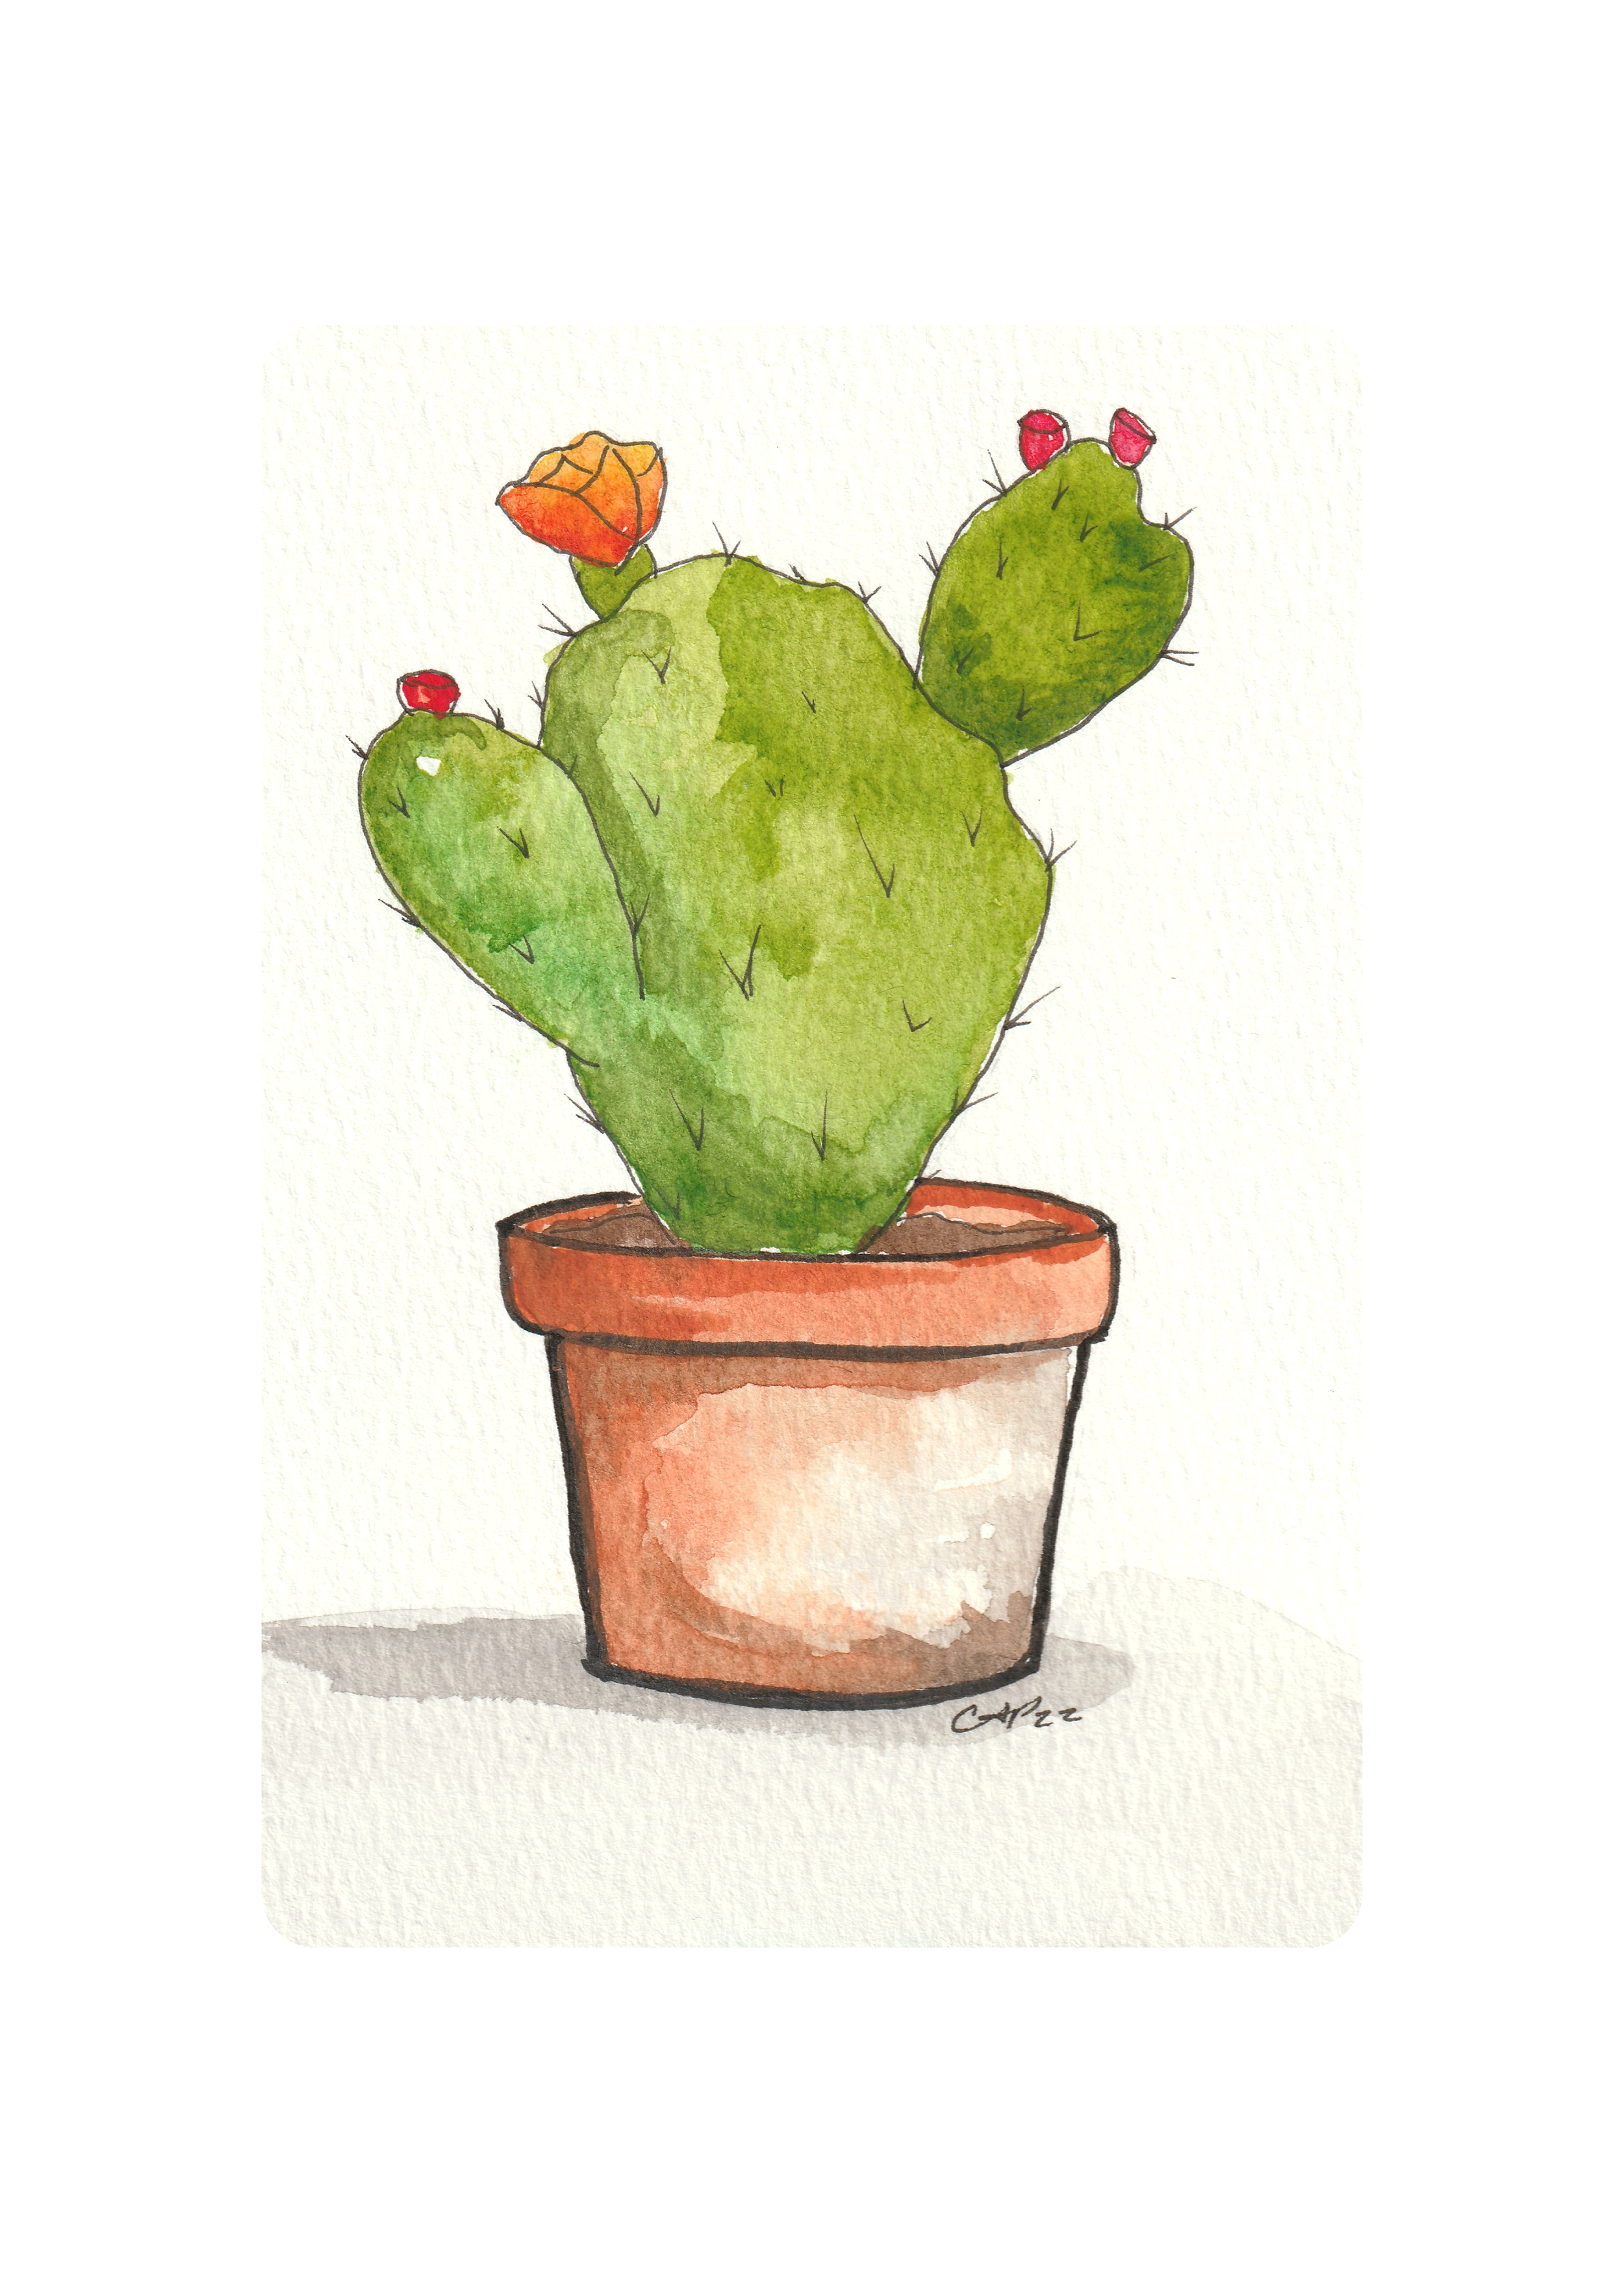 Cactus in a Terra-cotta Pot.png